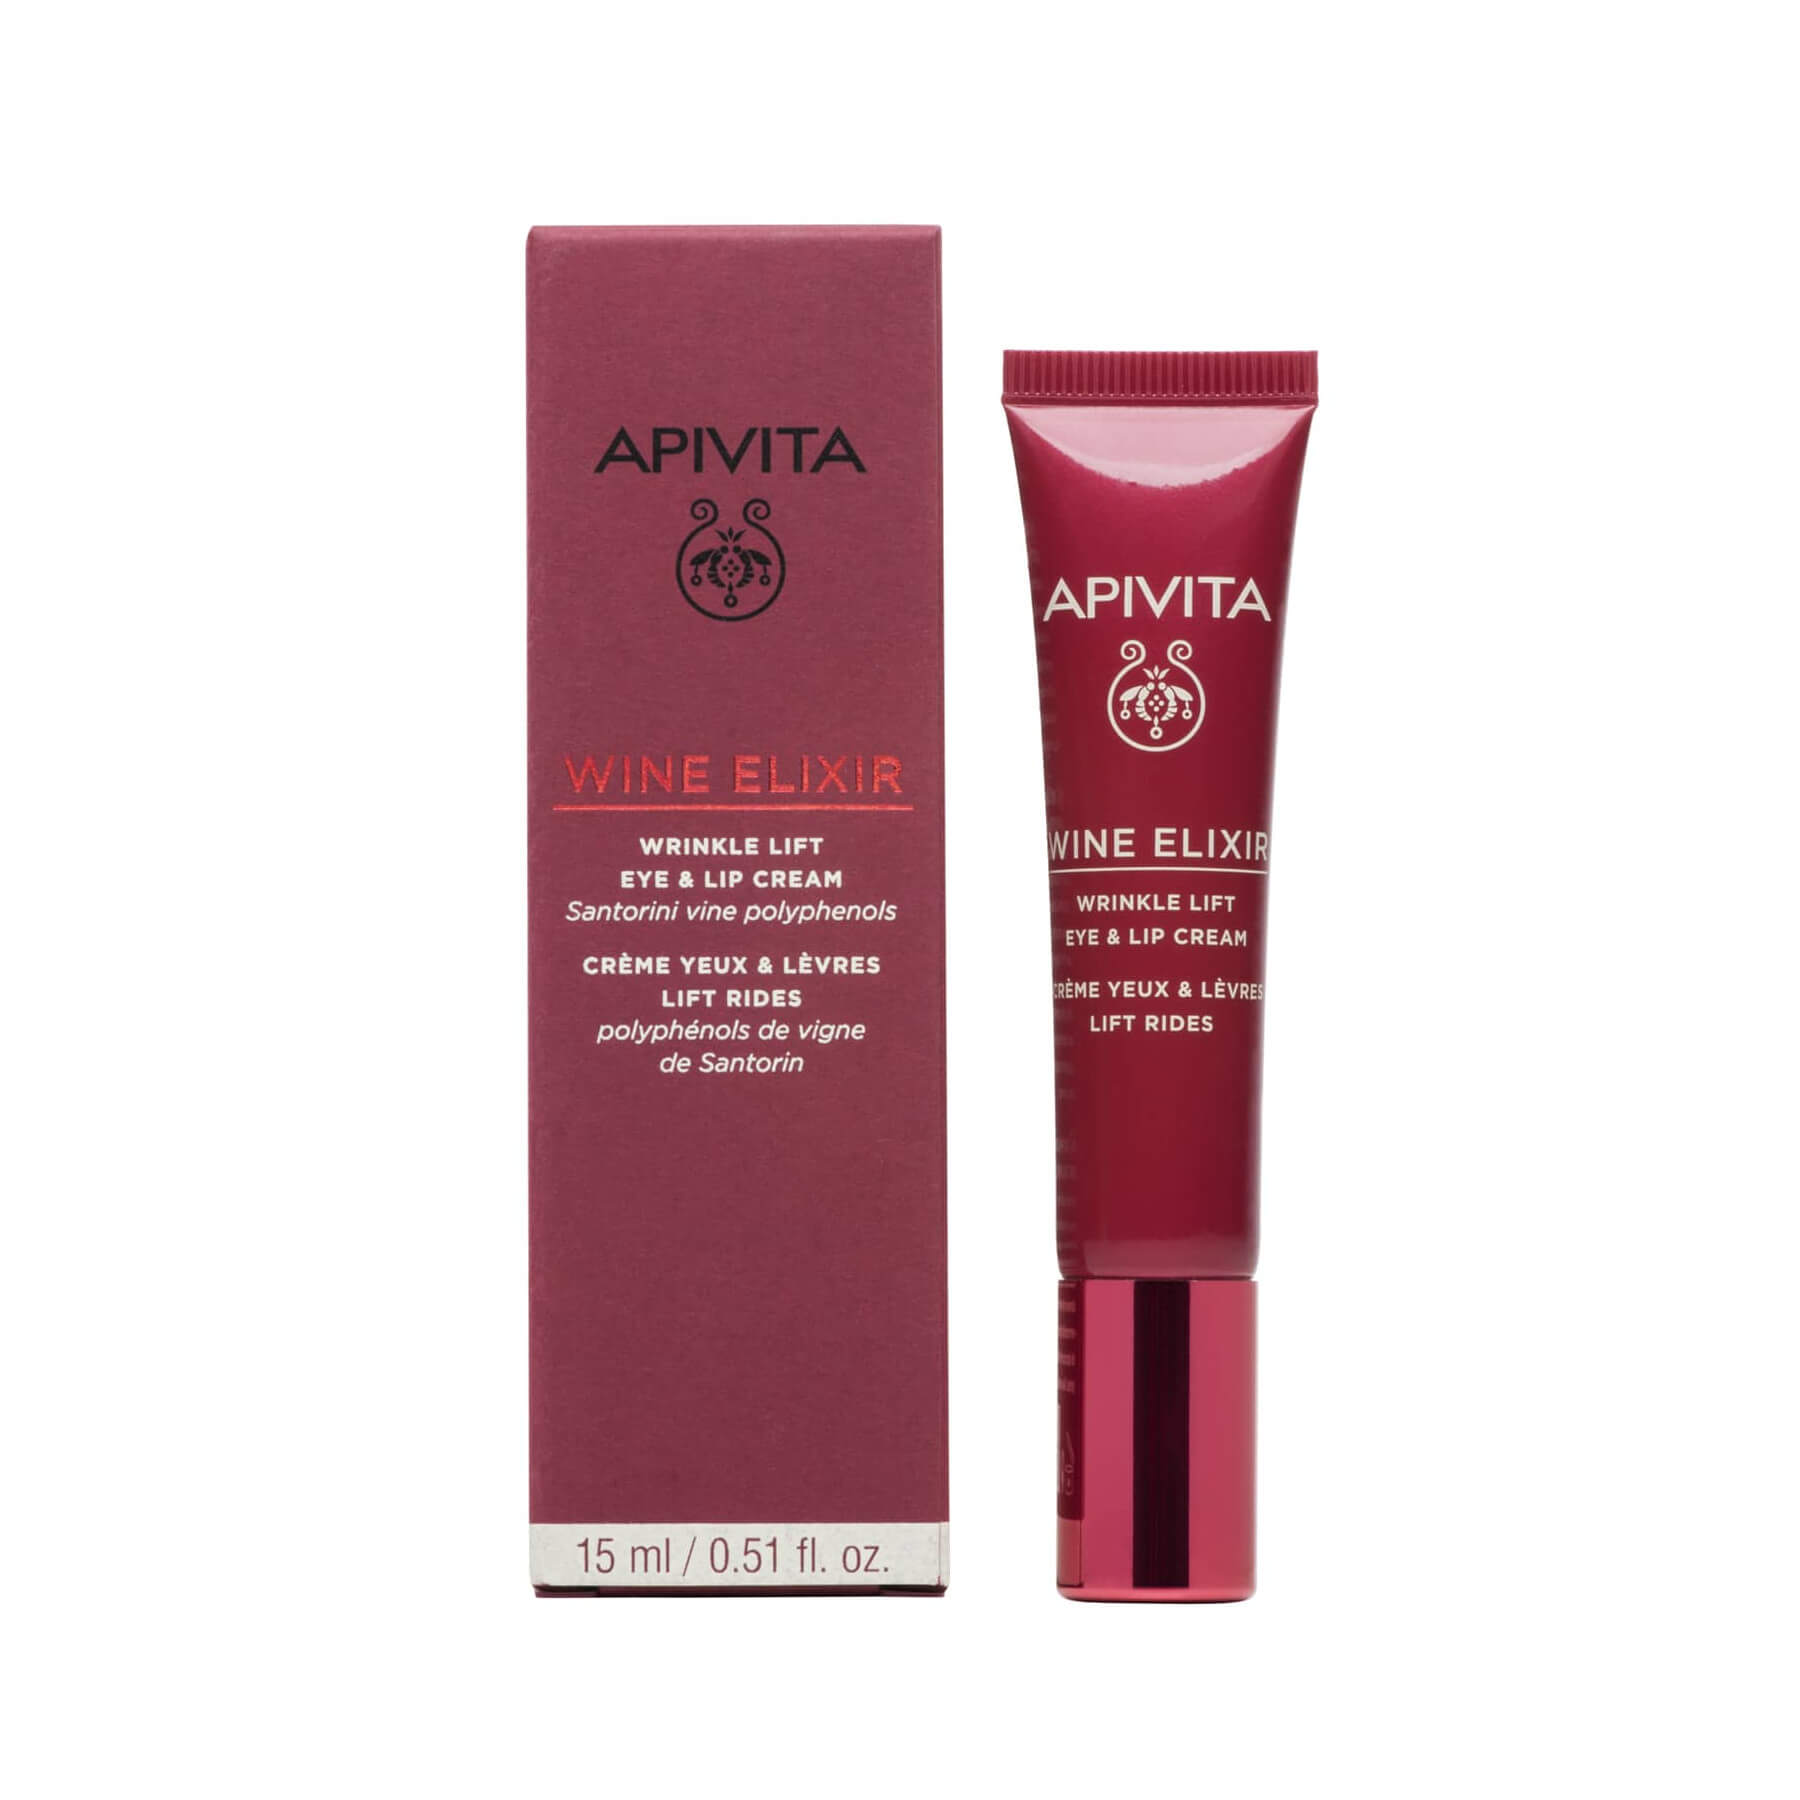 Apivita Wine Elixir Αντιρυτιδική Κρέμα Lifting για τα Μάτια & τα Χείλη 15mL - Συσκευασία και προϊόν